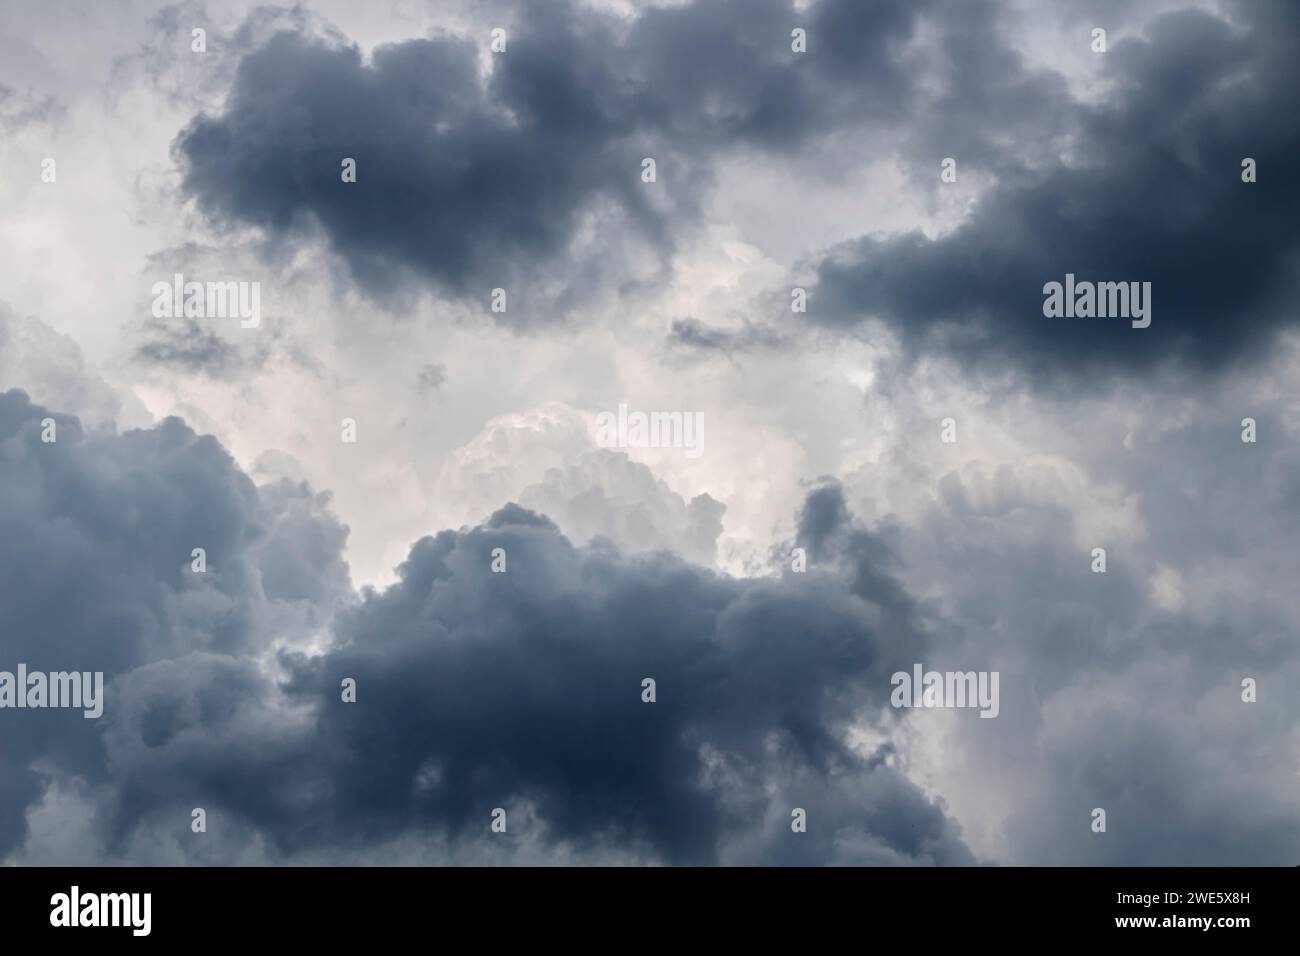 Nuages gris dans le ciel avant la pluie. Concept de prévision météorologique. Banque D'Images